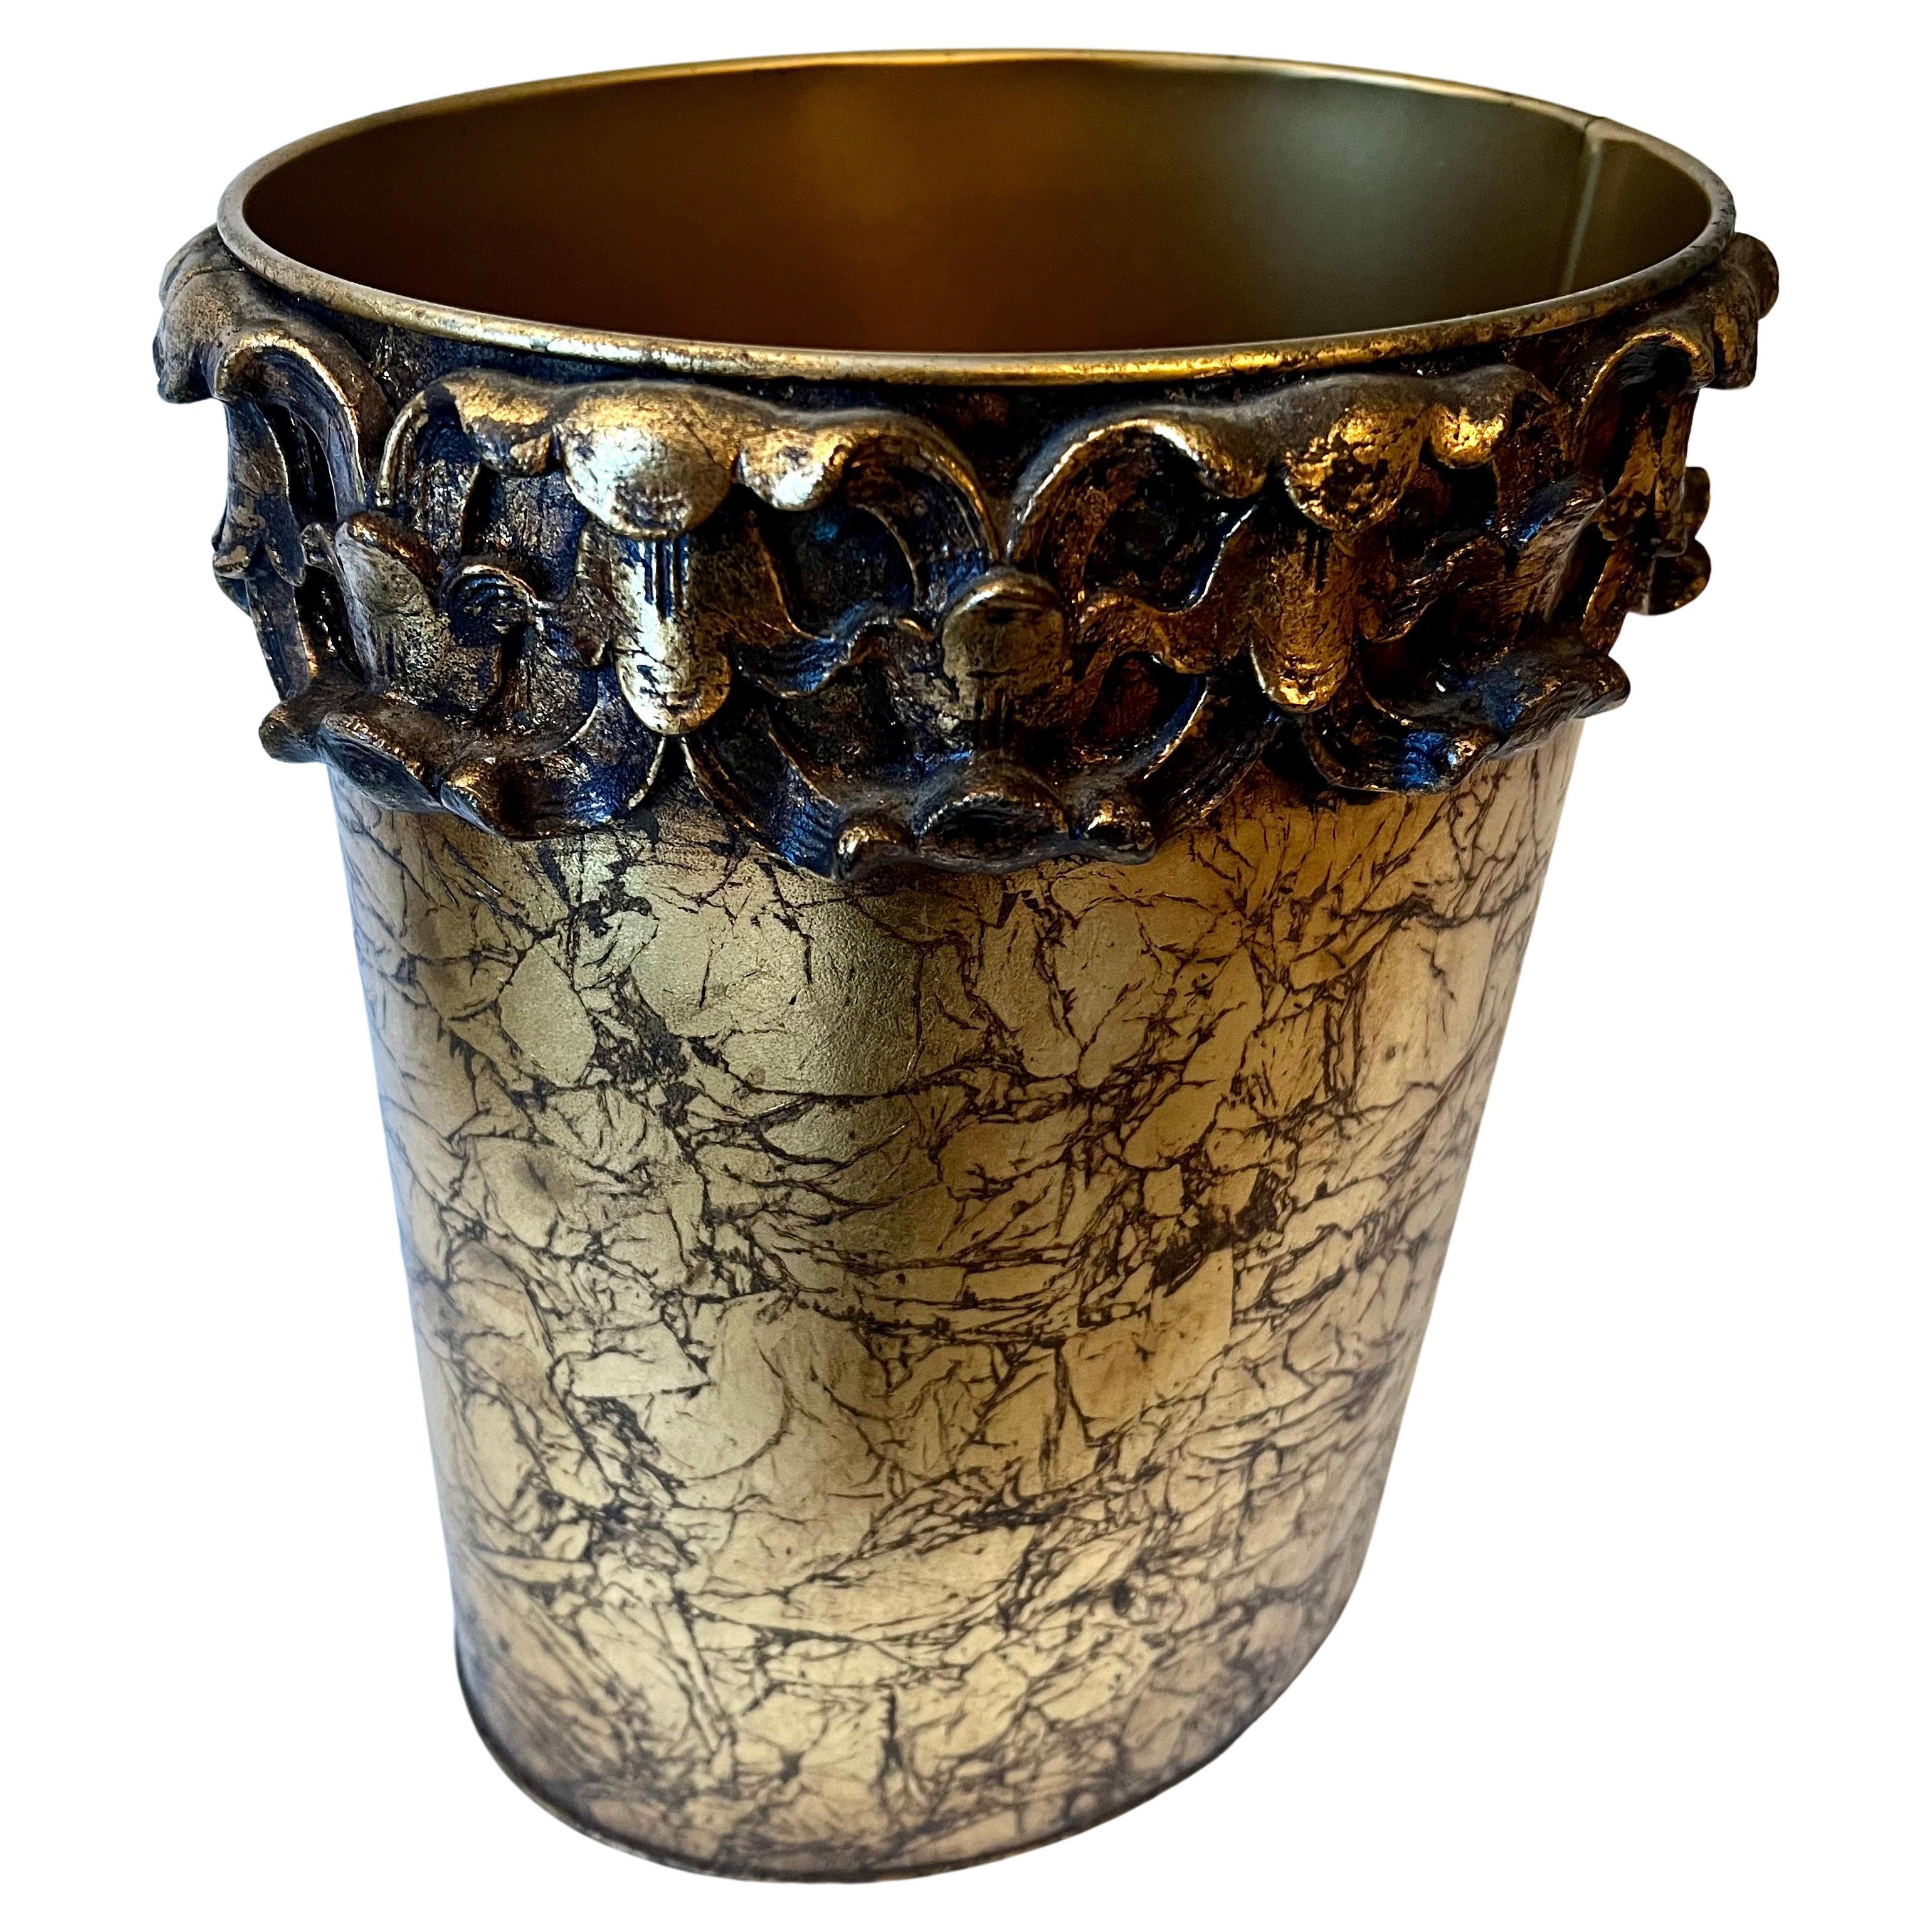 Boîte à déchets ou panier en métal doré italien de style Hollywood Regency avec bande florale